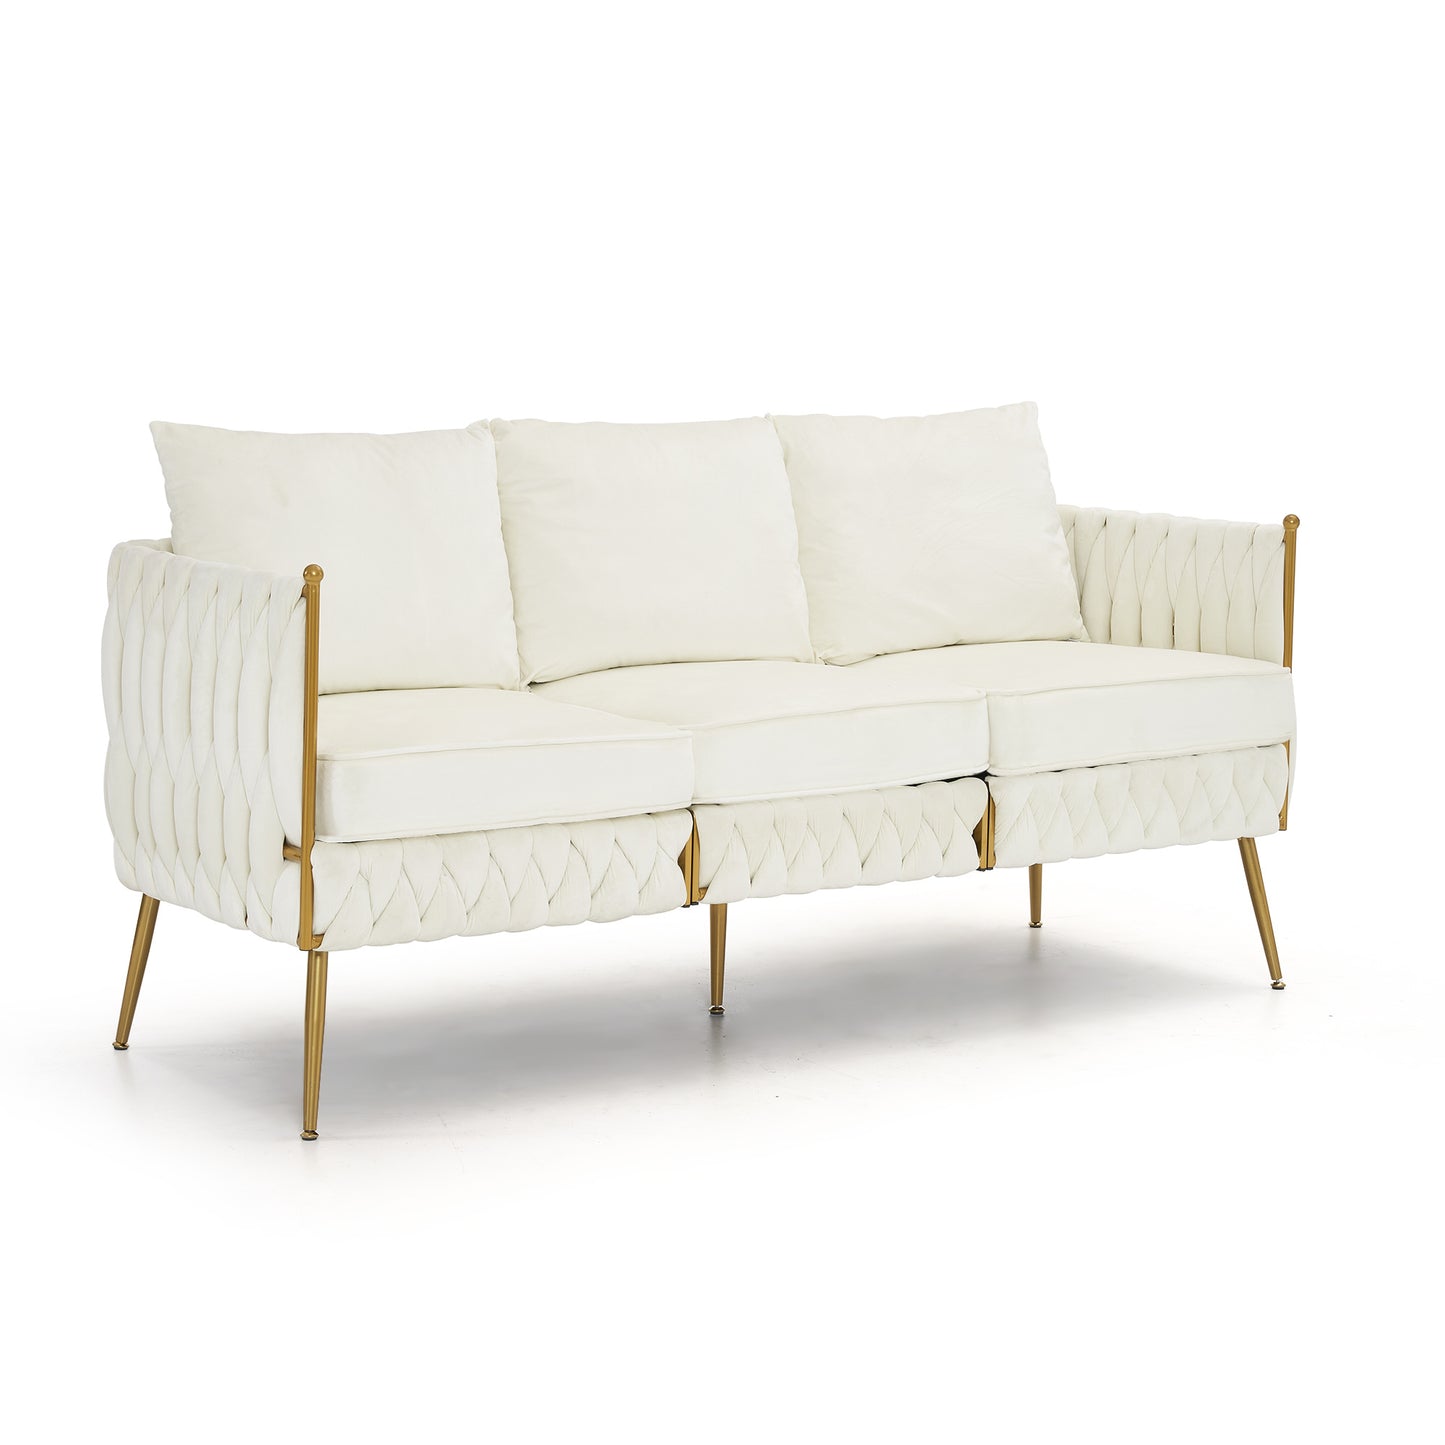 2 pieces velvet sofa couch set, cream white velvet